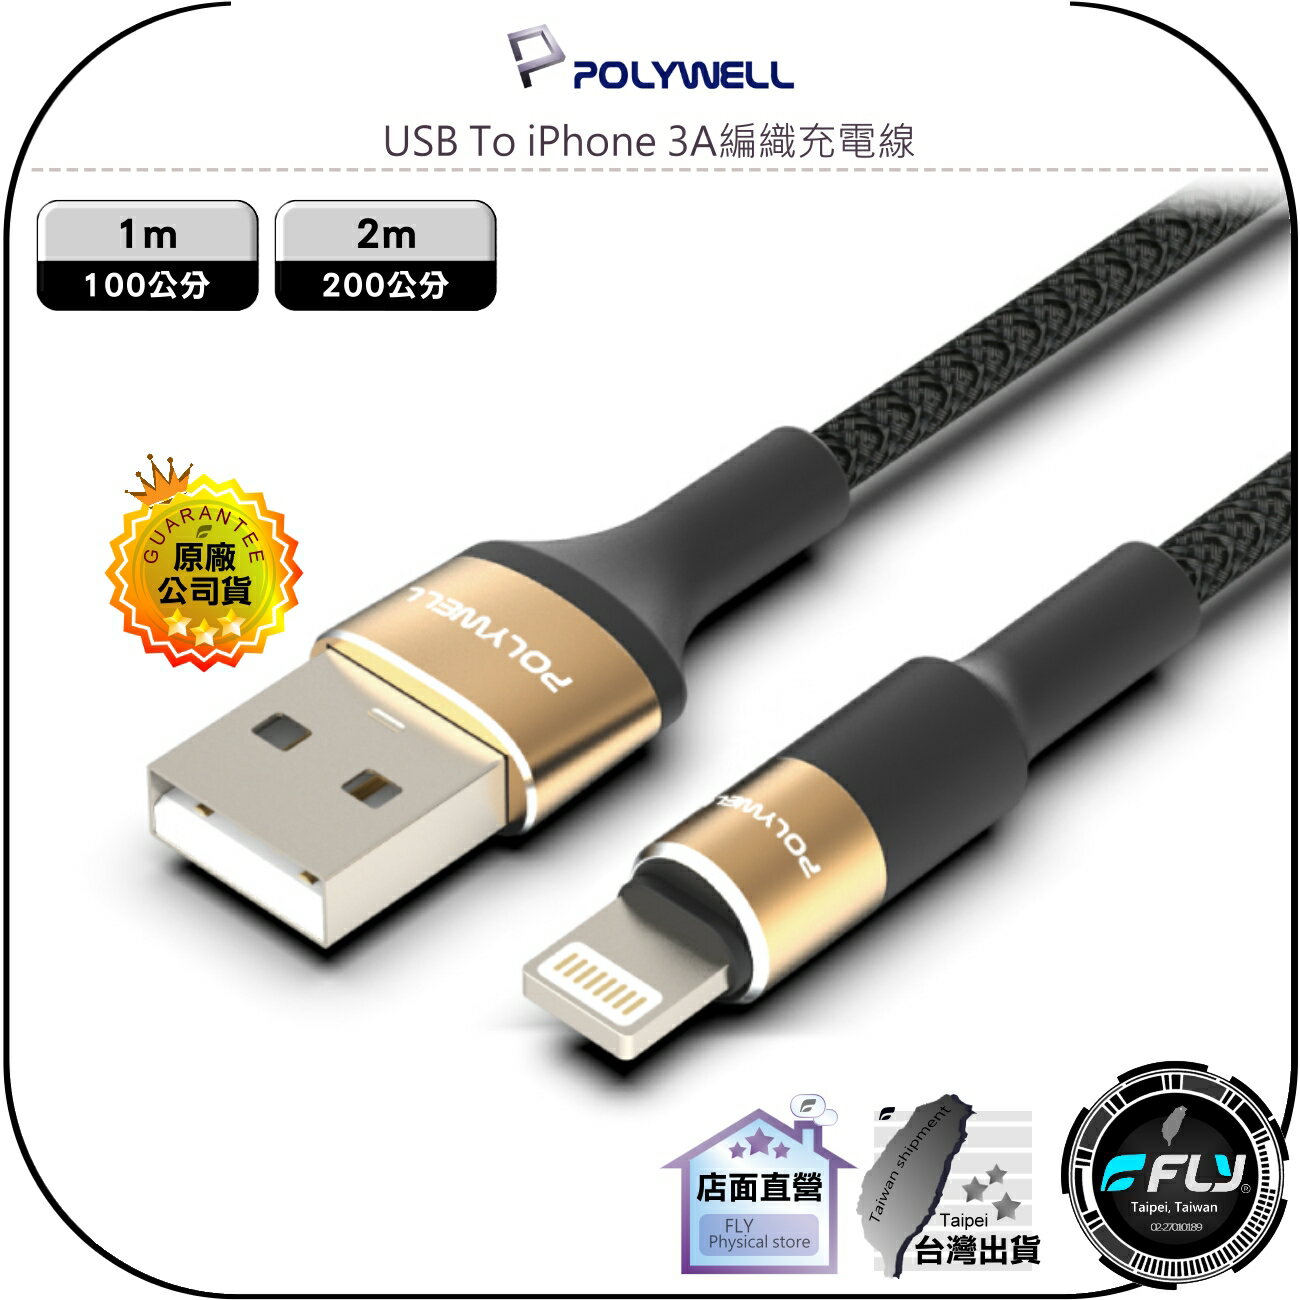 【飛翔商城】POLYWELL 寶利威爾 USB To iPhone 3A編織充電線◉公司貨◉圓型鋁合金◉1m/2m